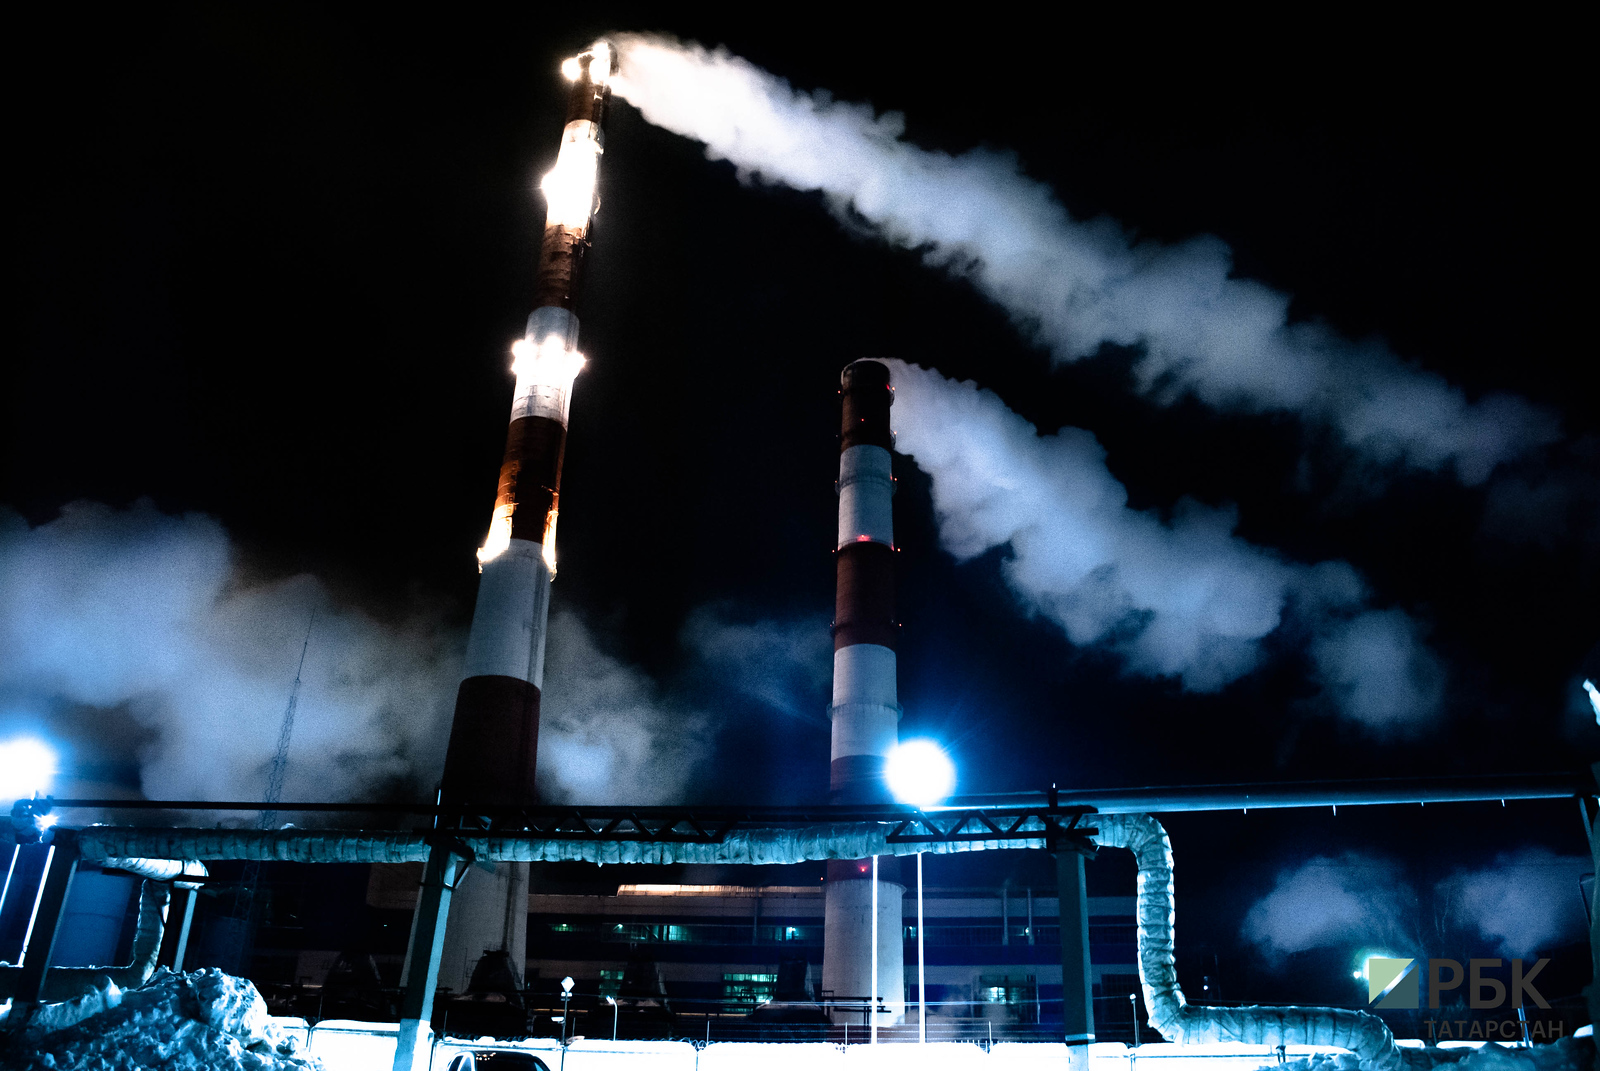 Из ЖК «Салават купере» поступила 261 жалоба на загрязнение воздуха